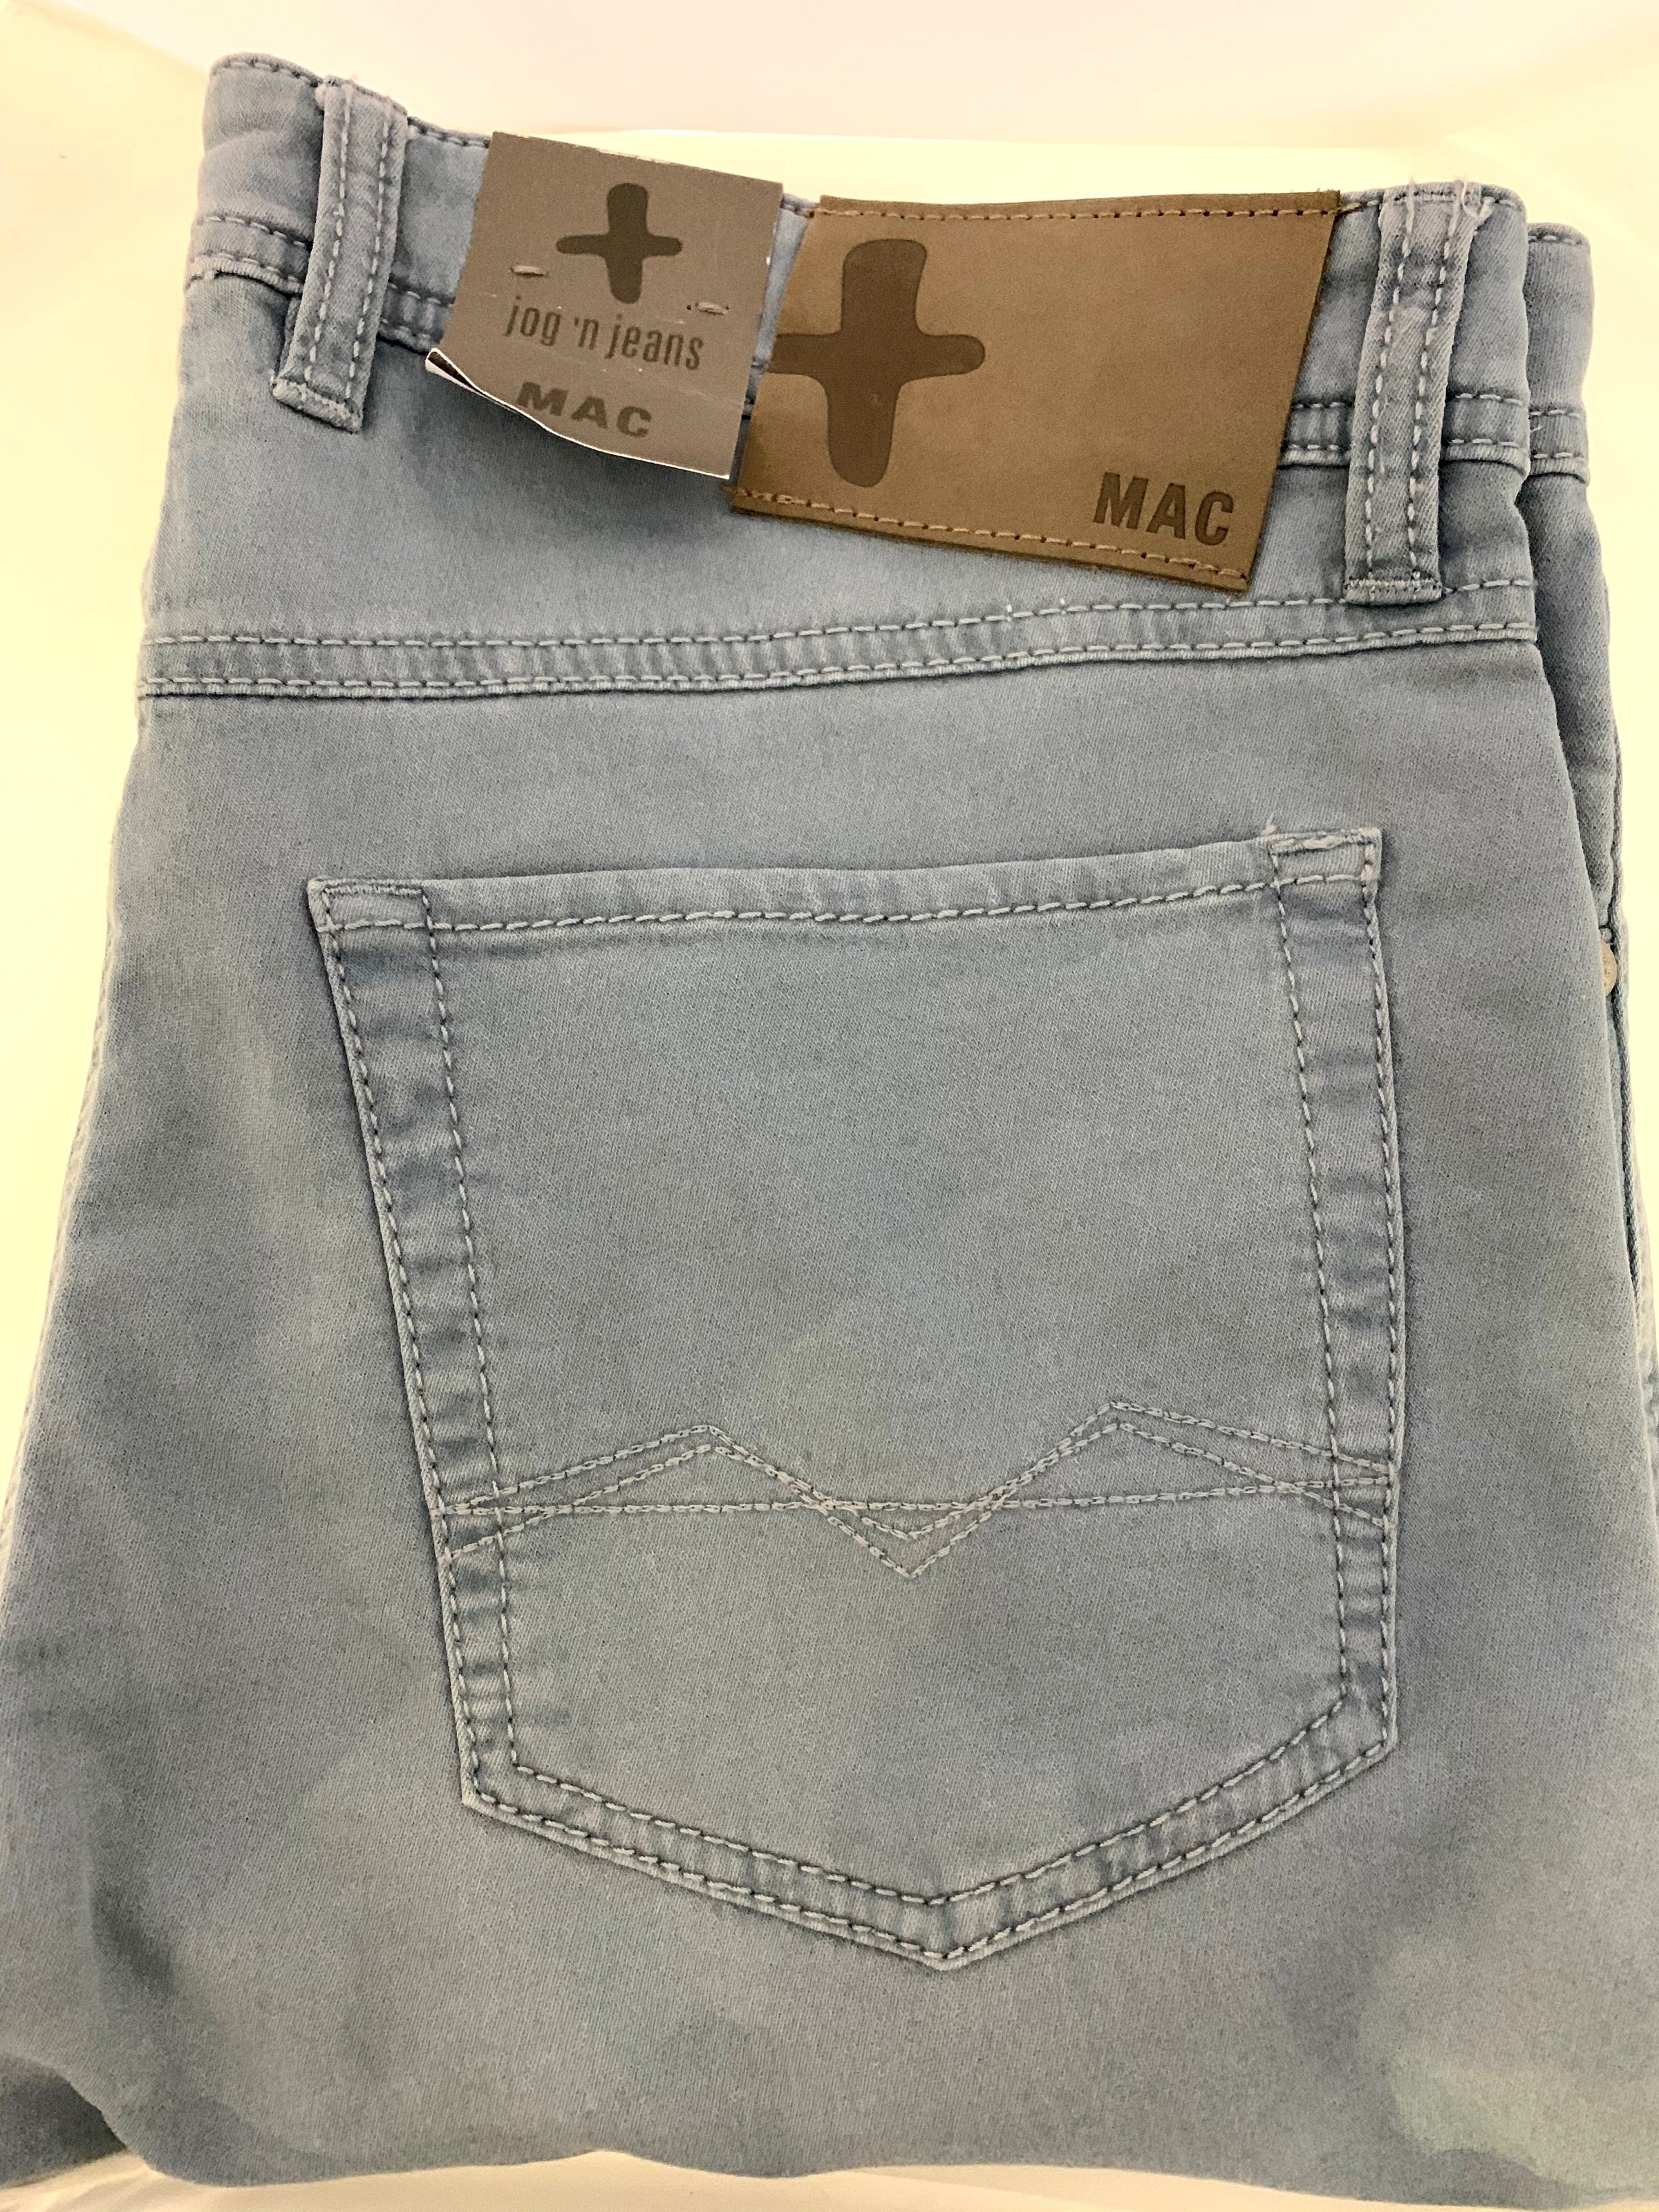 Pocket Marko Dark MAC JEANS Jeans Cotton NY 5 – San Grey